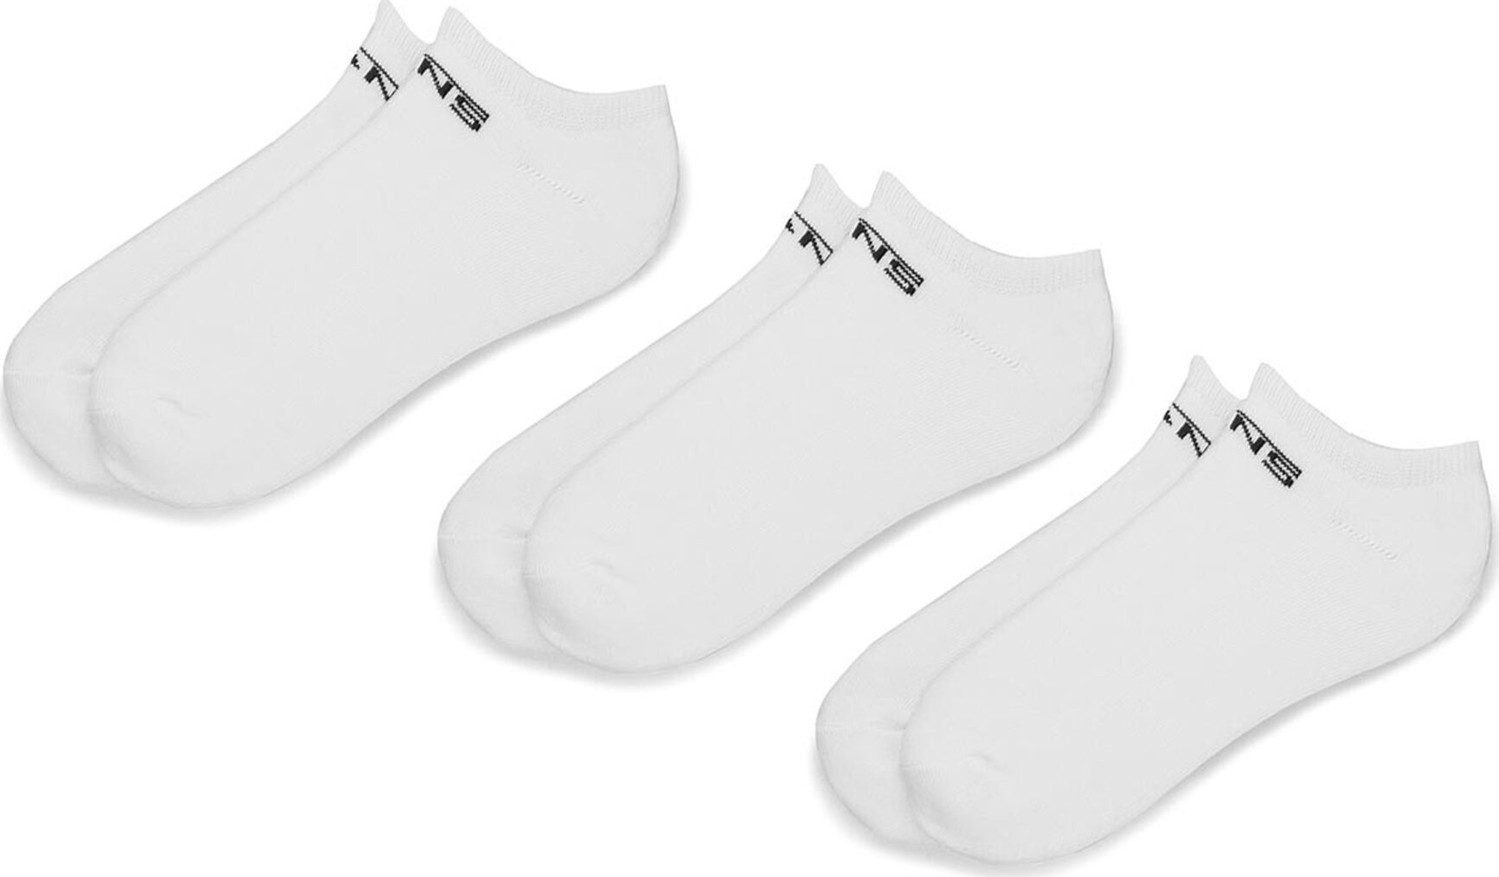 Sada 3 párů dámských nízkých ponožek Vans Classic Kick VN000XSXWHT White